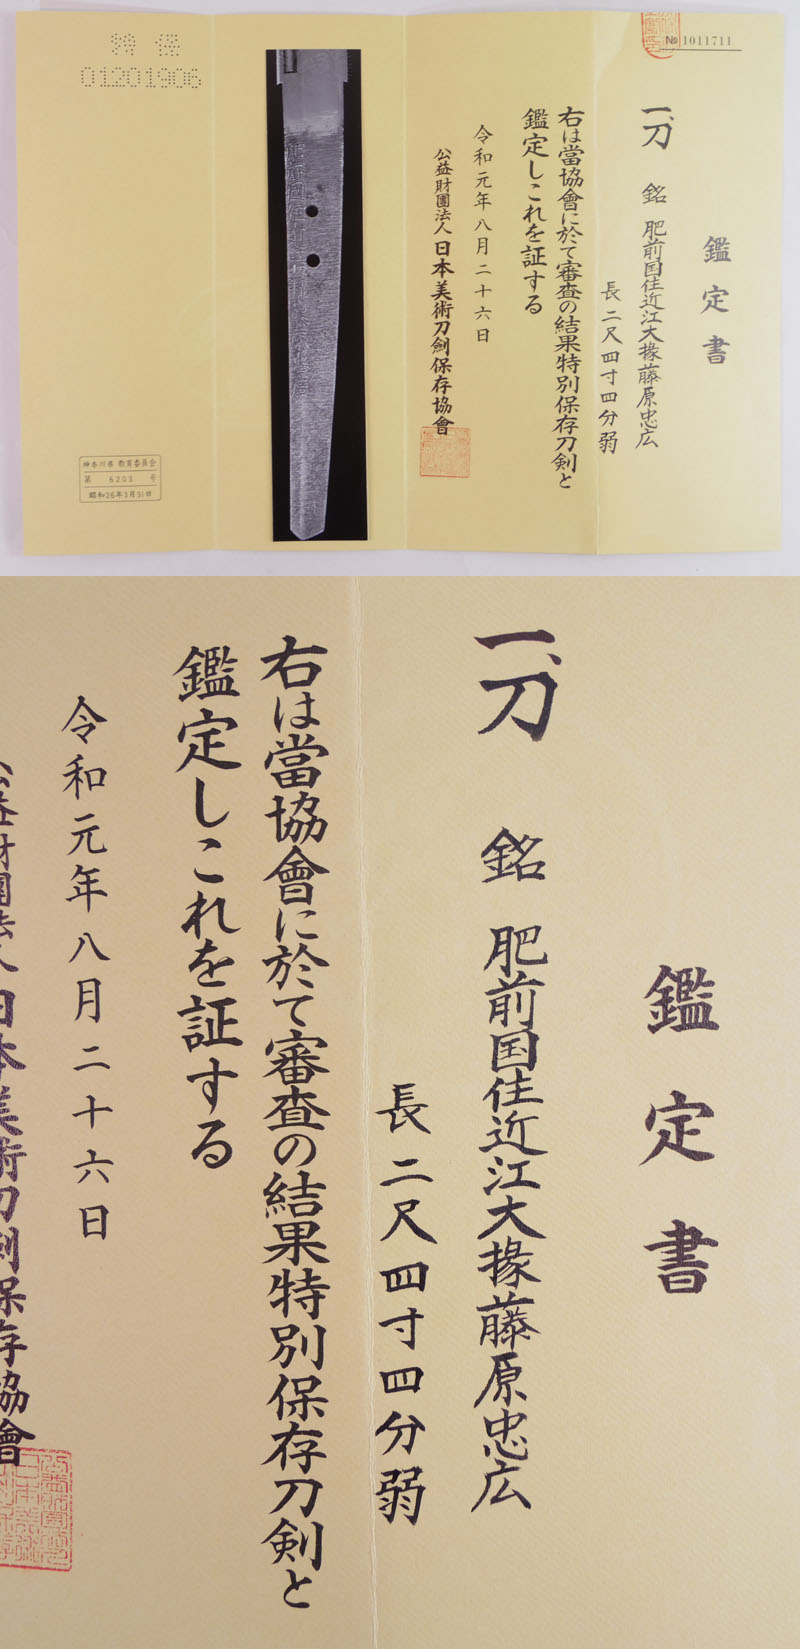 刀　肥前国住近江大掾藤原忠広 (新刀上々作) (大業物) Picture of Certificate